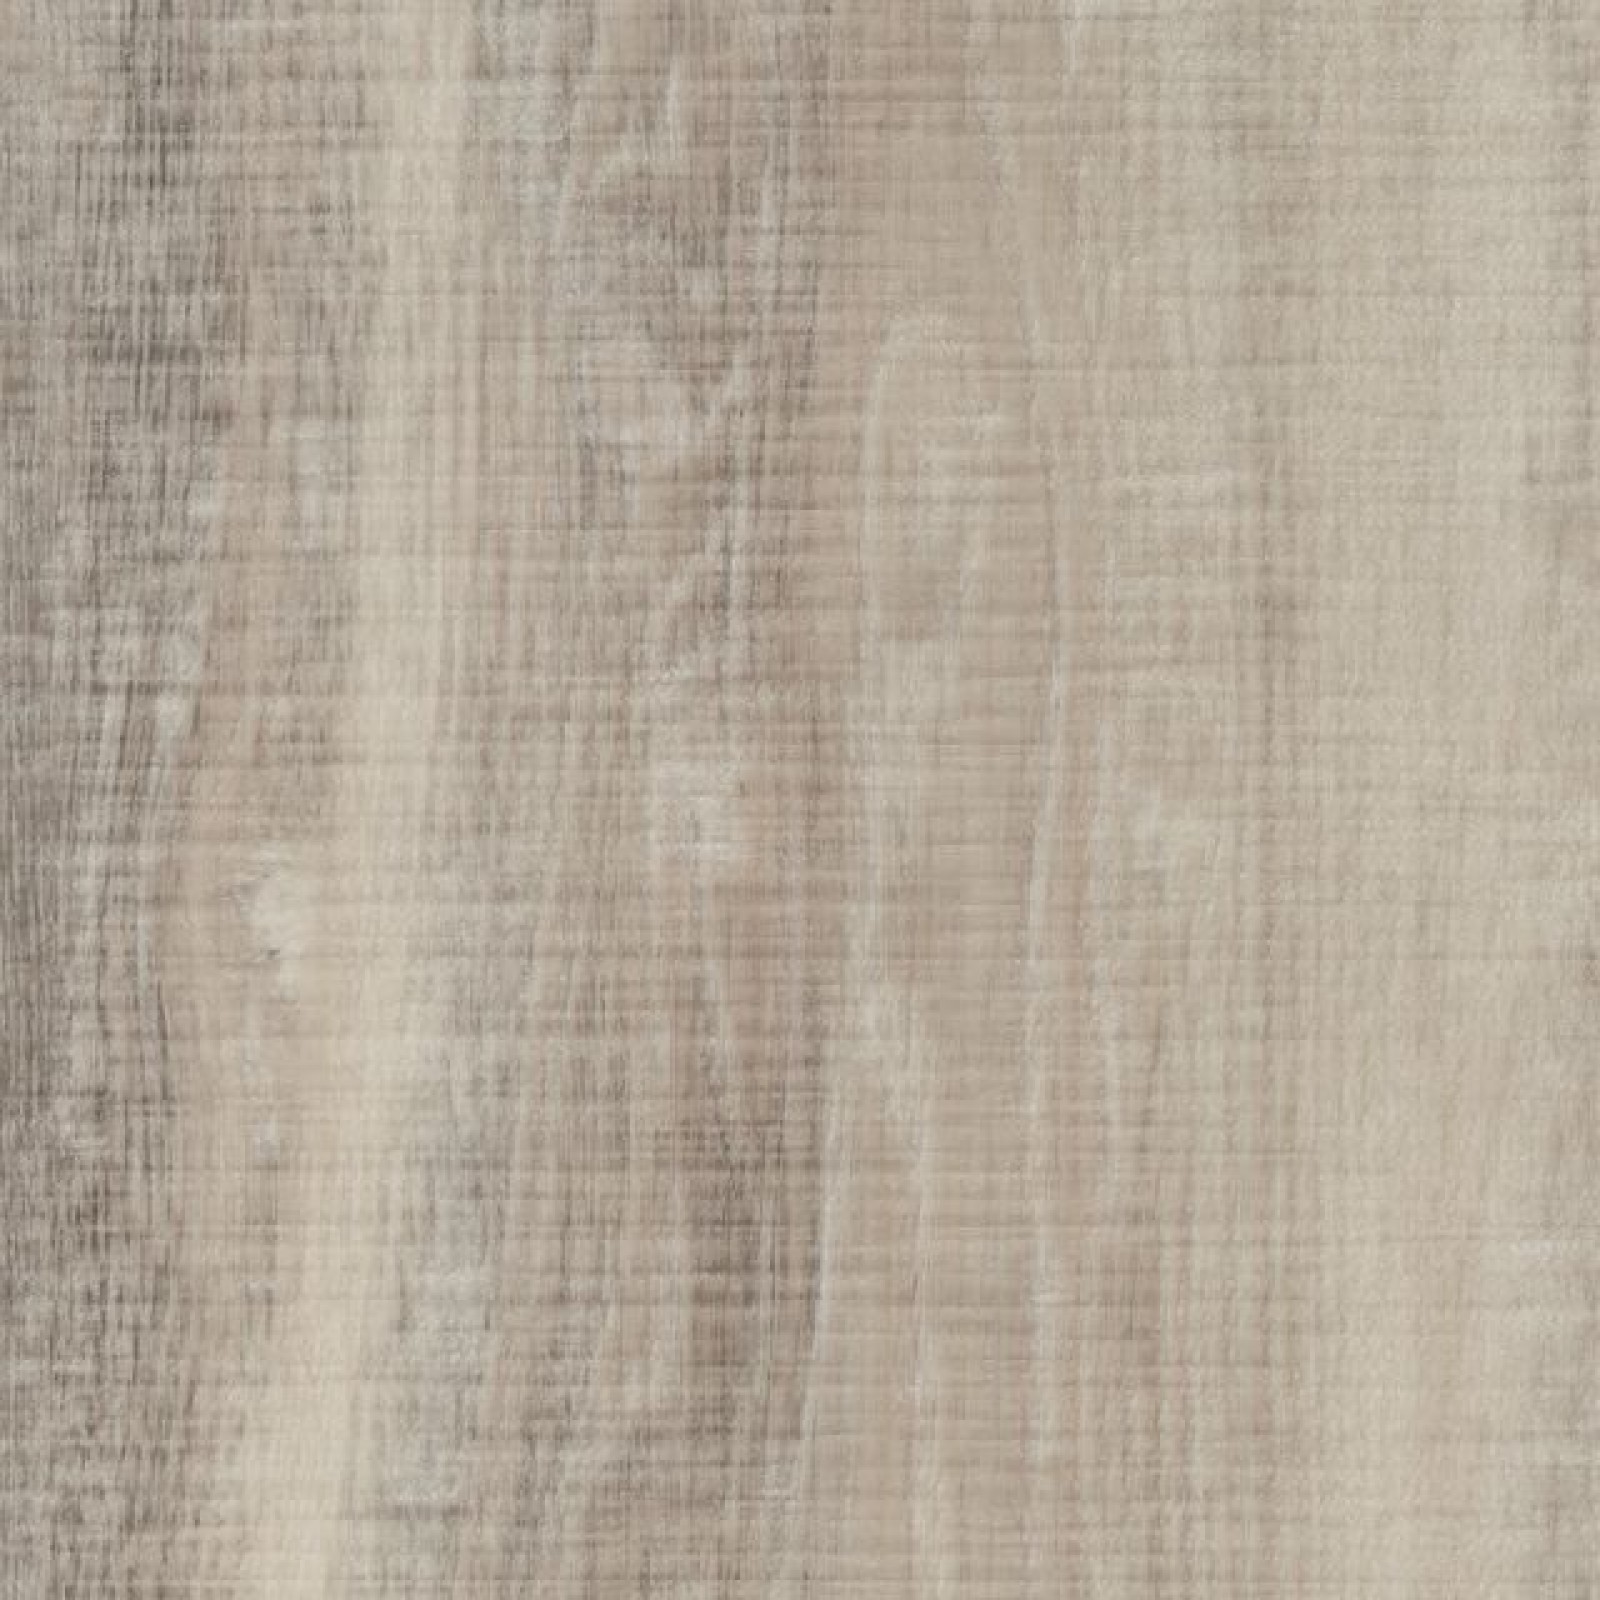 Vzor - 60151 white raw timber